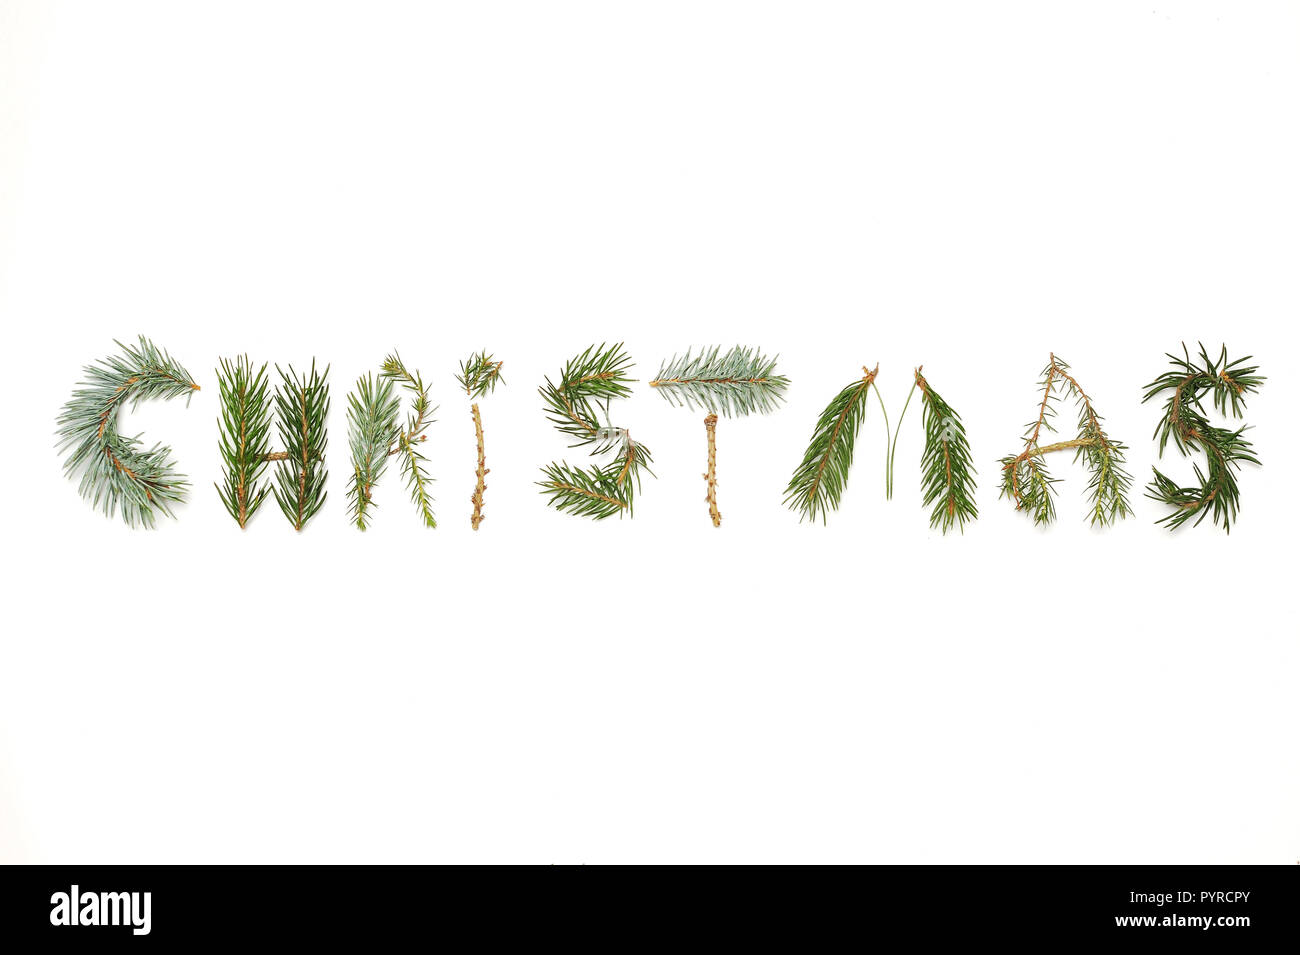 Composition de Noël. Noël mot constitué de différentes plantes d'hiver sur fond blanc. Mise à plat, vue du dessus. Banque D'Images